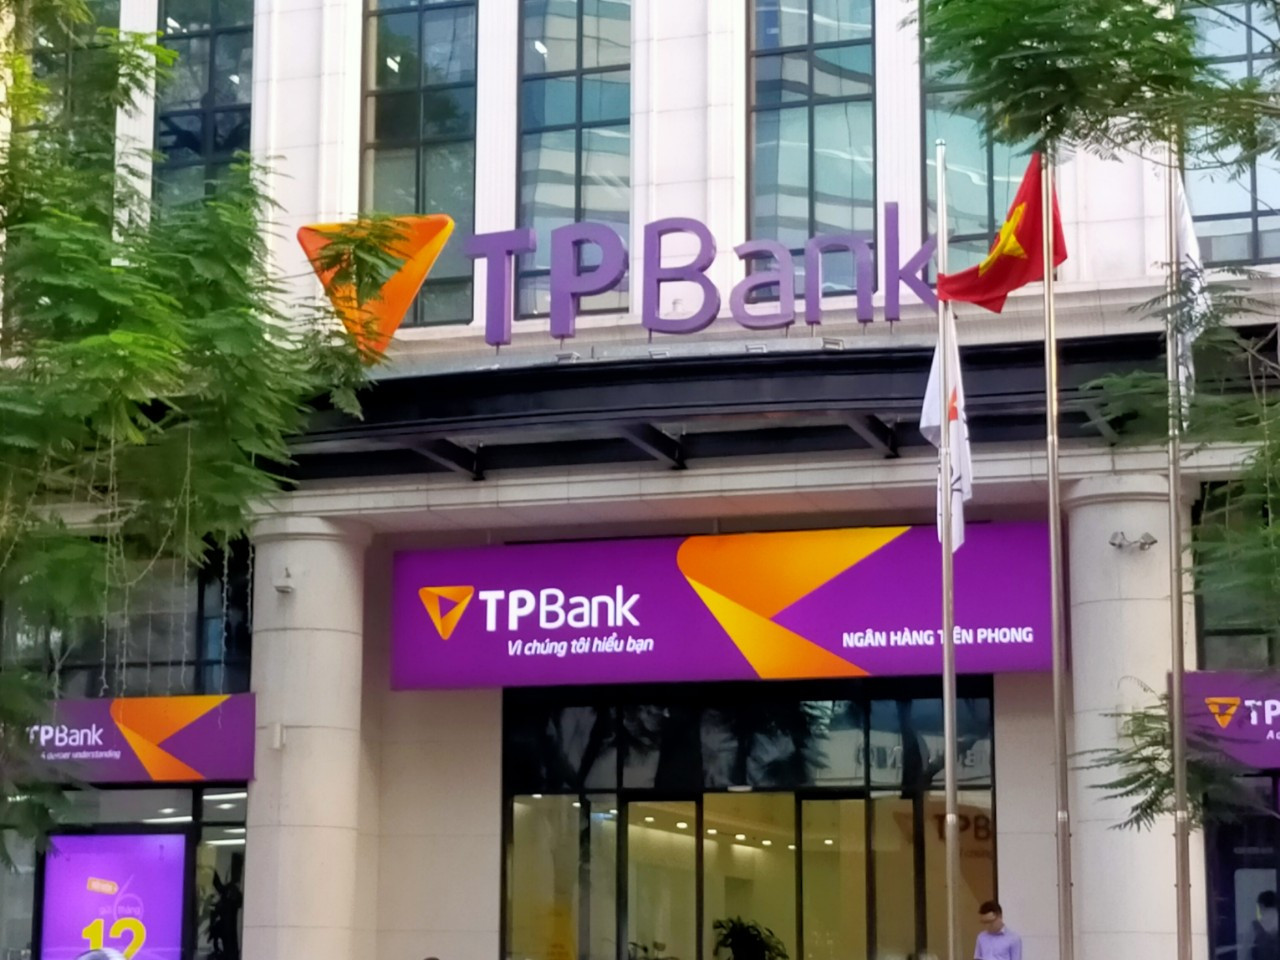 Với gần 1.6 tỷ cp đang lưu hành, ước tính TPBank cần chi hơn 3,954 tỷ đồng để trả cổ tức cho cổ đông.